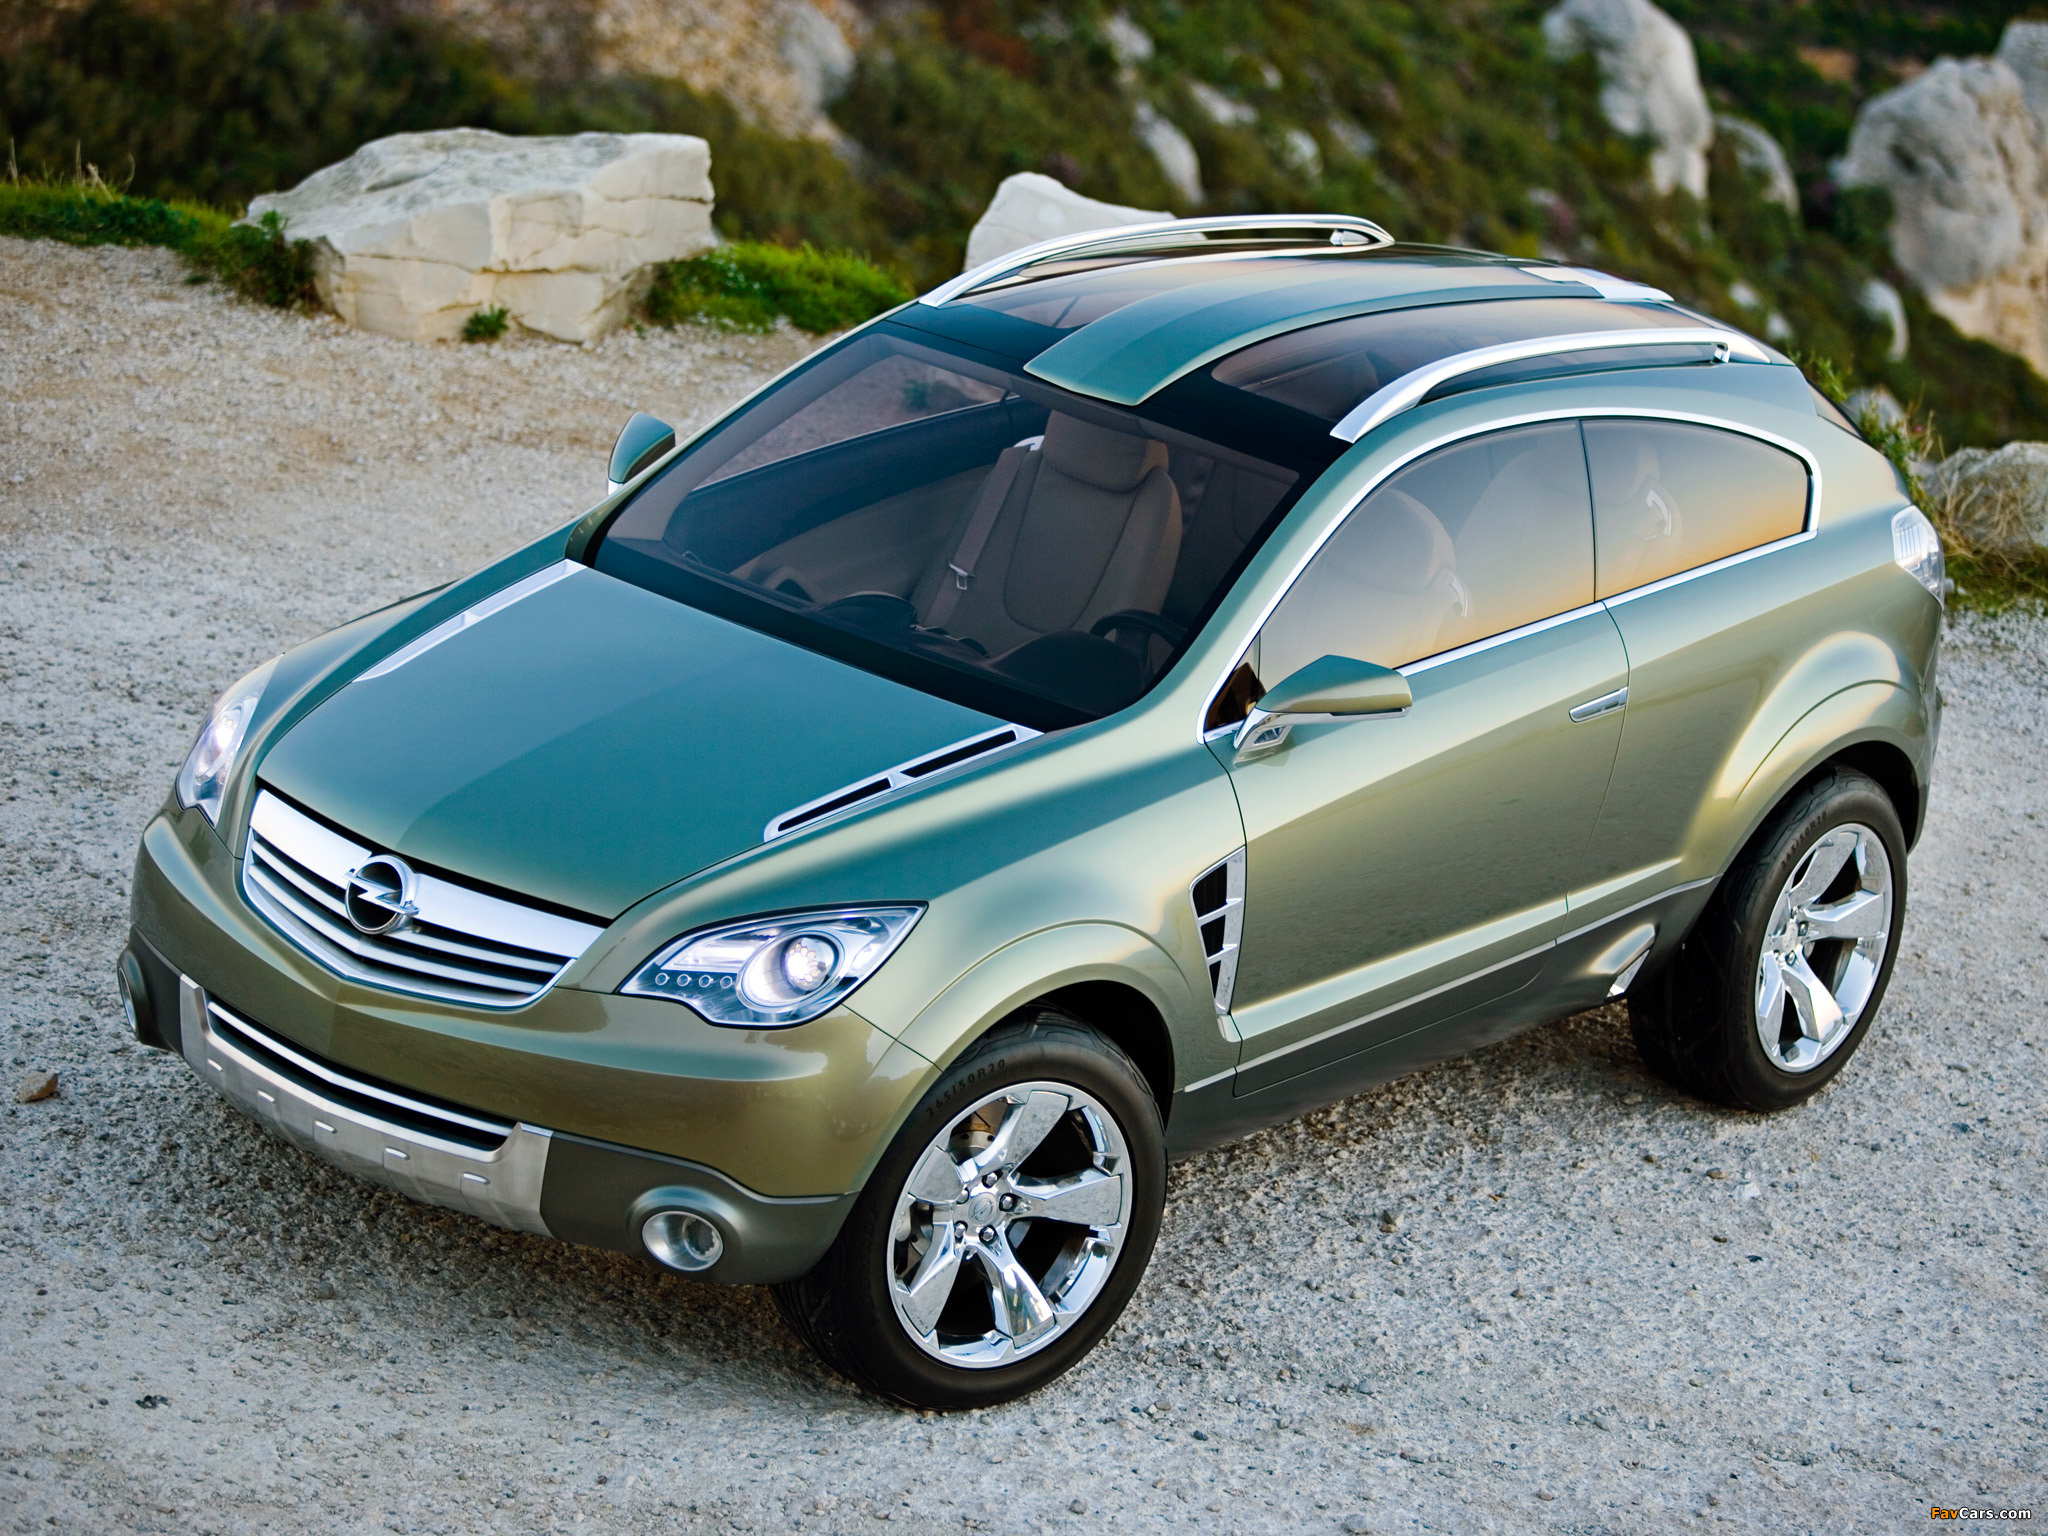 Opel antara купить. Opel Antara GTC. Опель Антара 2.4. Опель Антара 2005. Opel Antara GTC 2005.